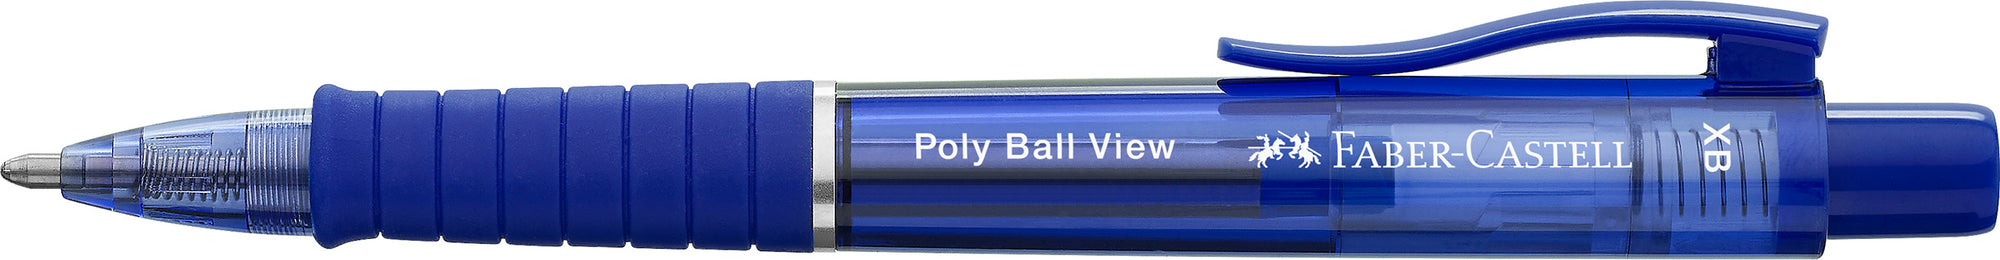 Faber-Castell Poly Ball View Ballpoint Pen